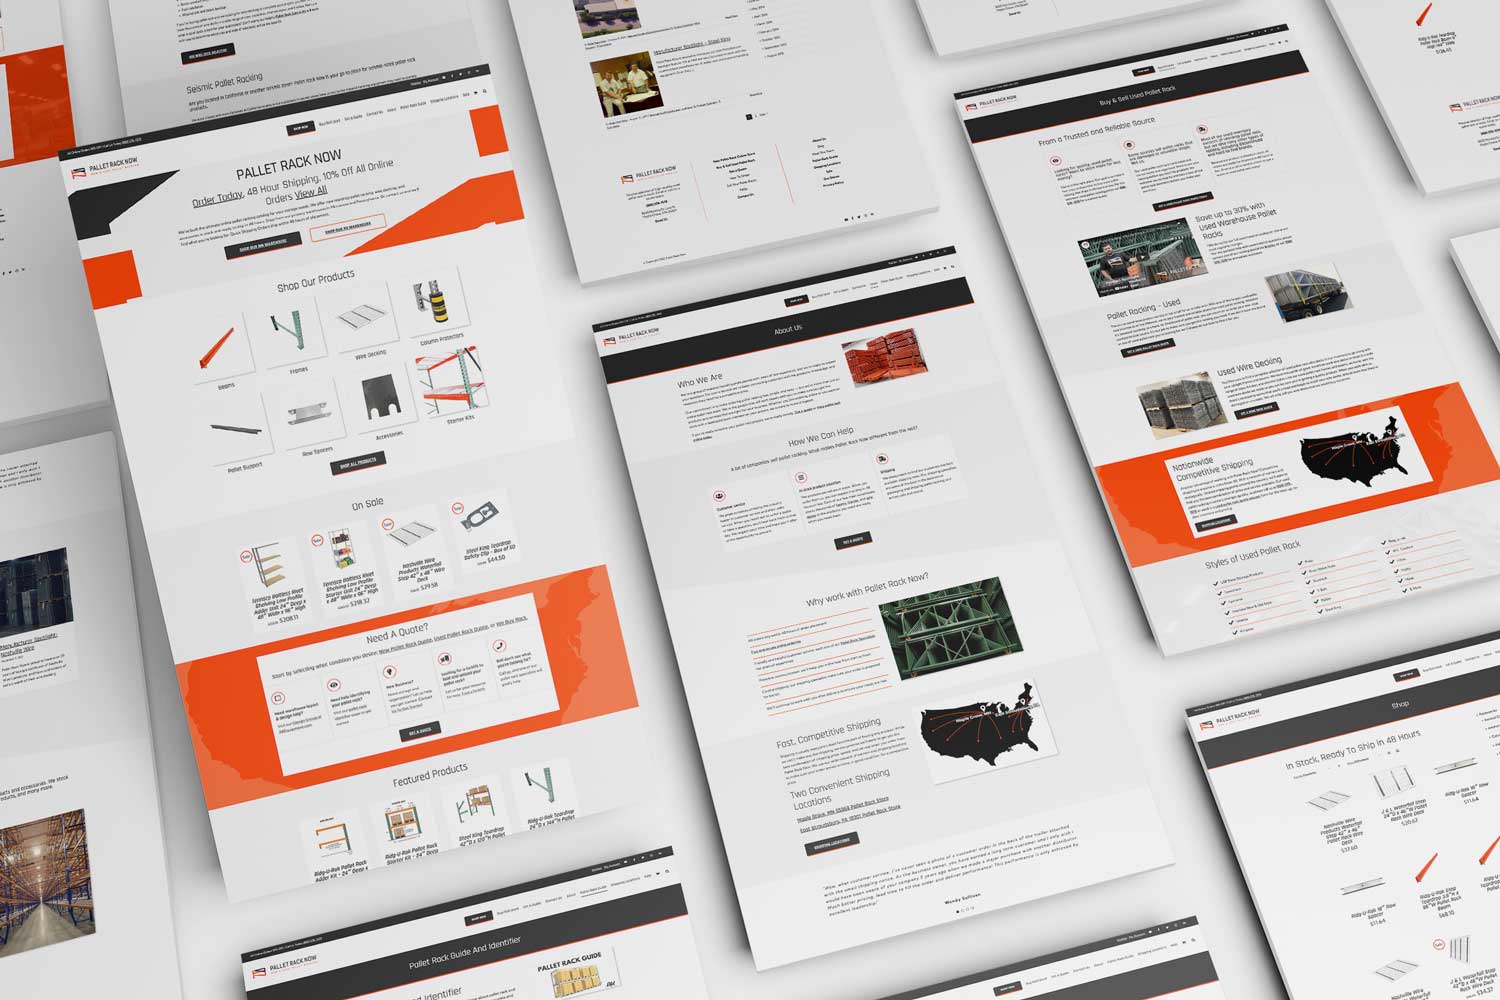 Pallet Rack Now Website Design